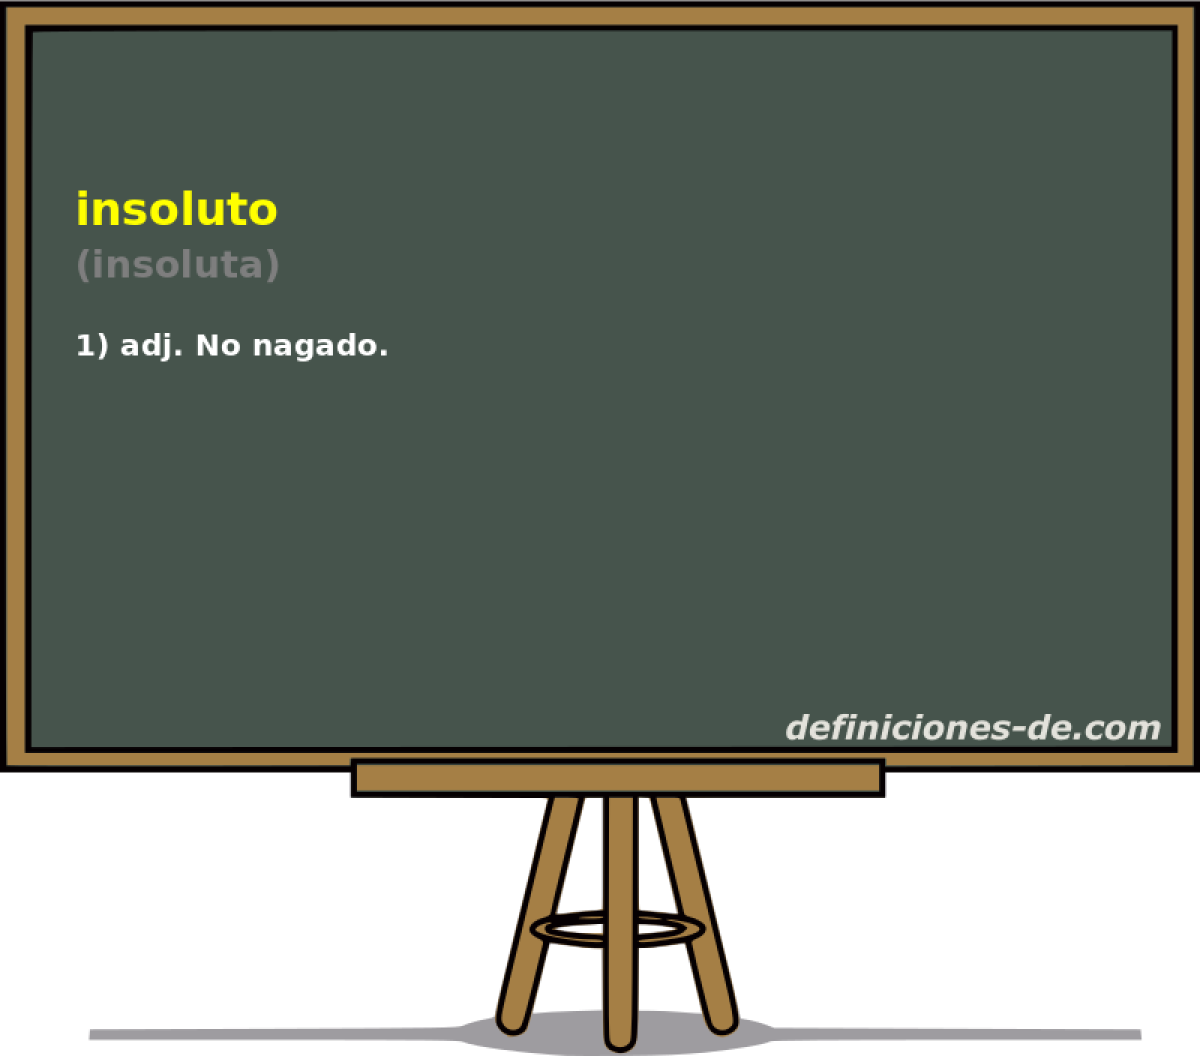 insoluto (insoluta)